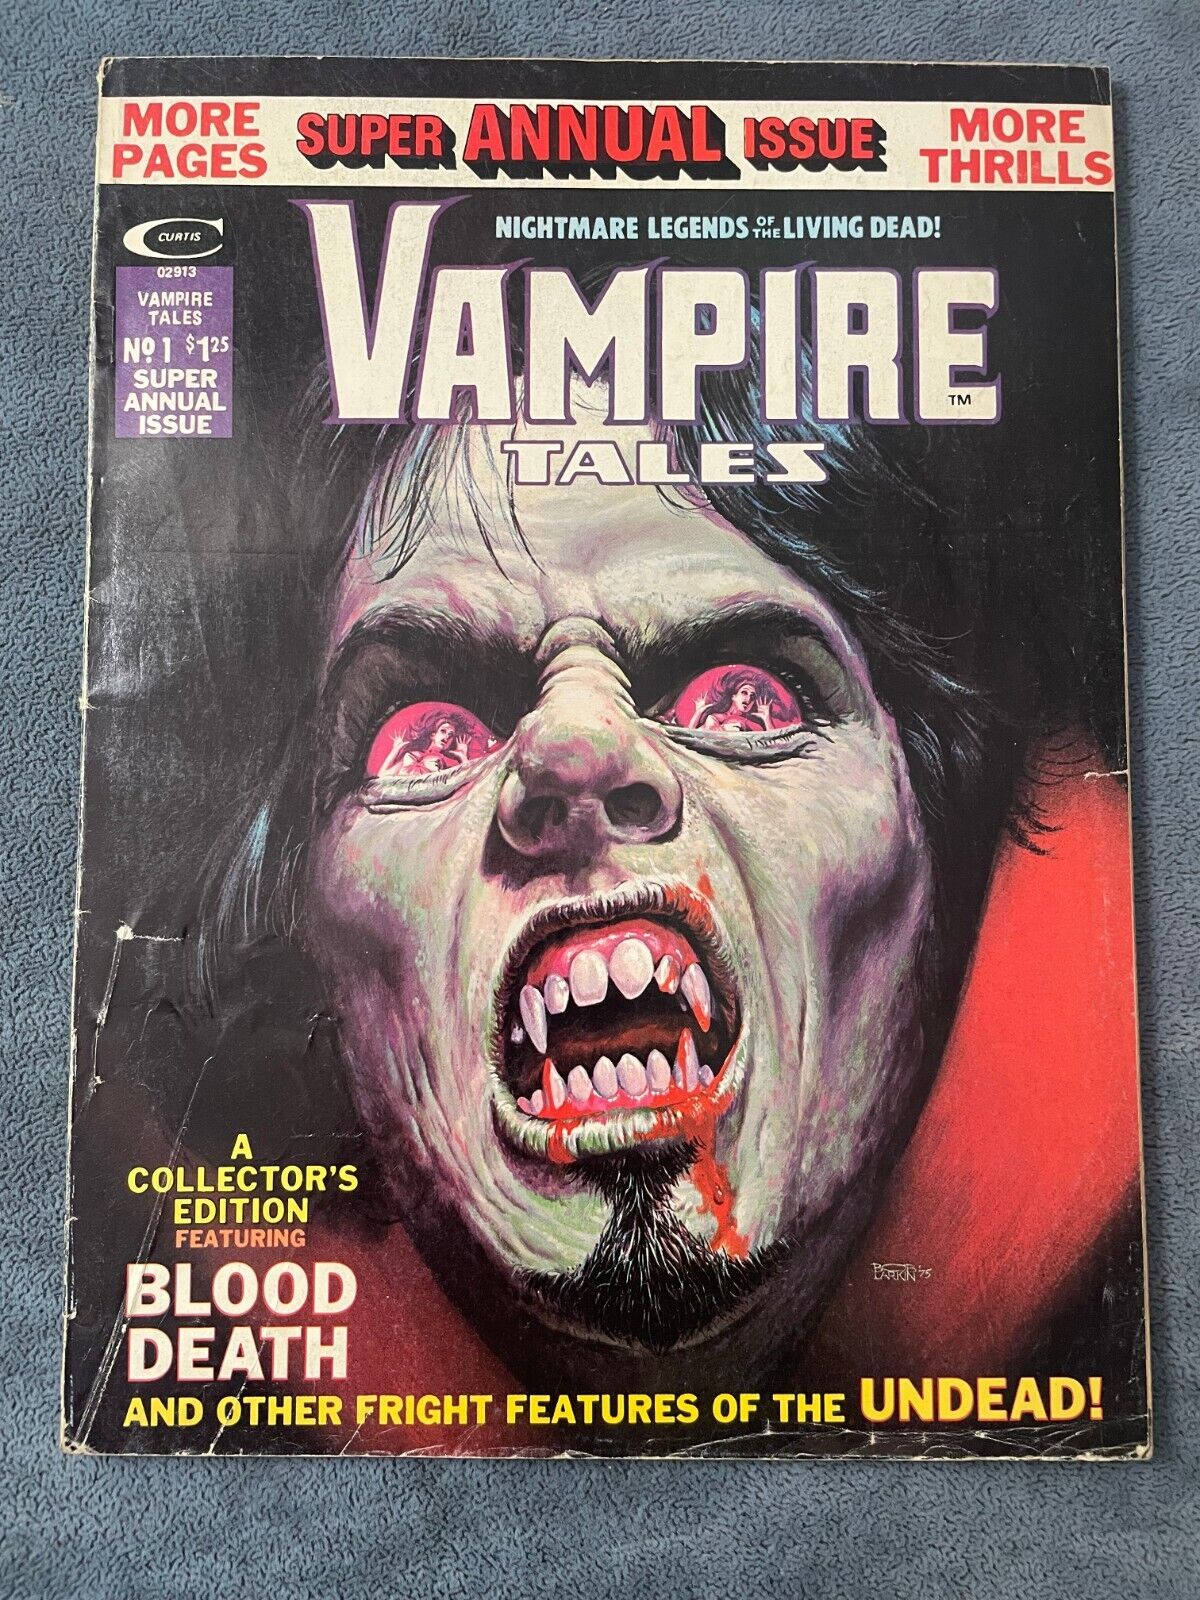 Vampire Tales Annual #1 1975 Marvel Magazine Horror Monster Group Morbius GD/VG